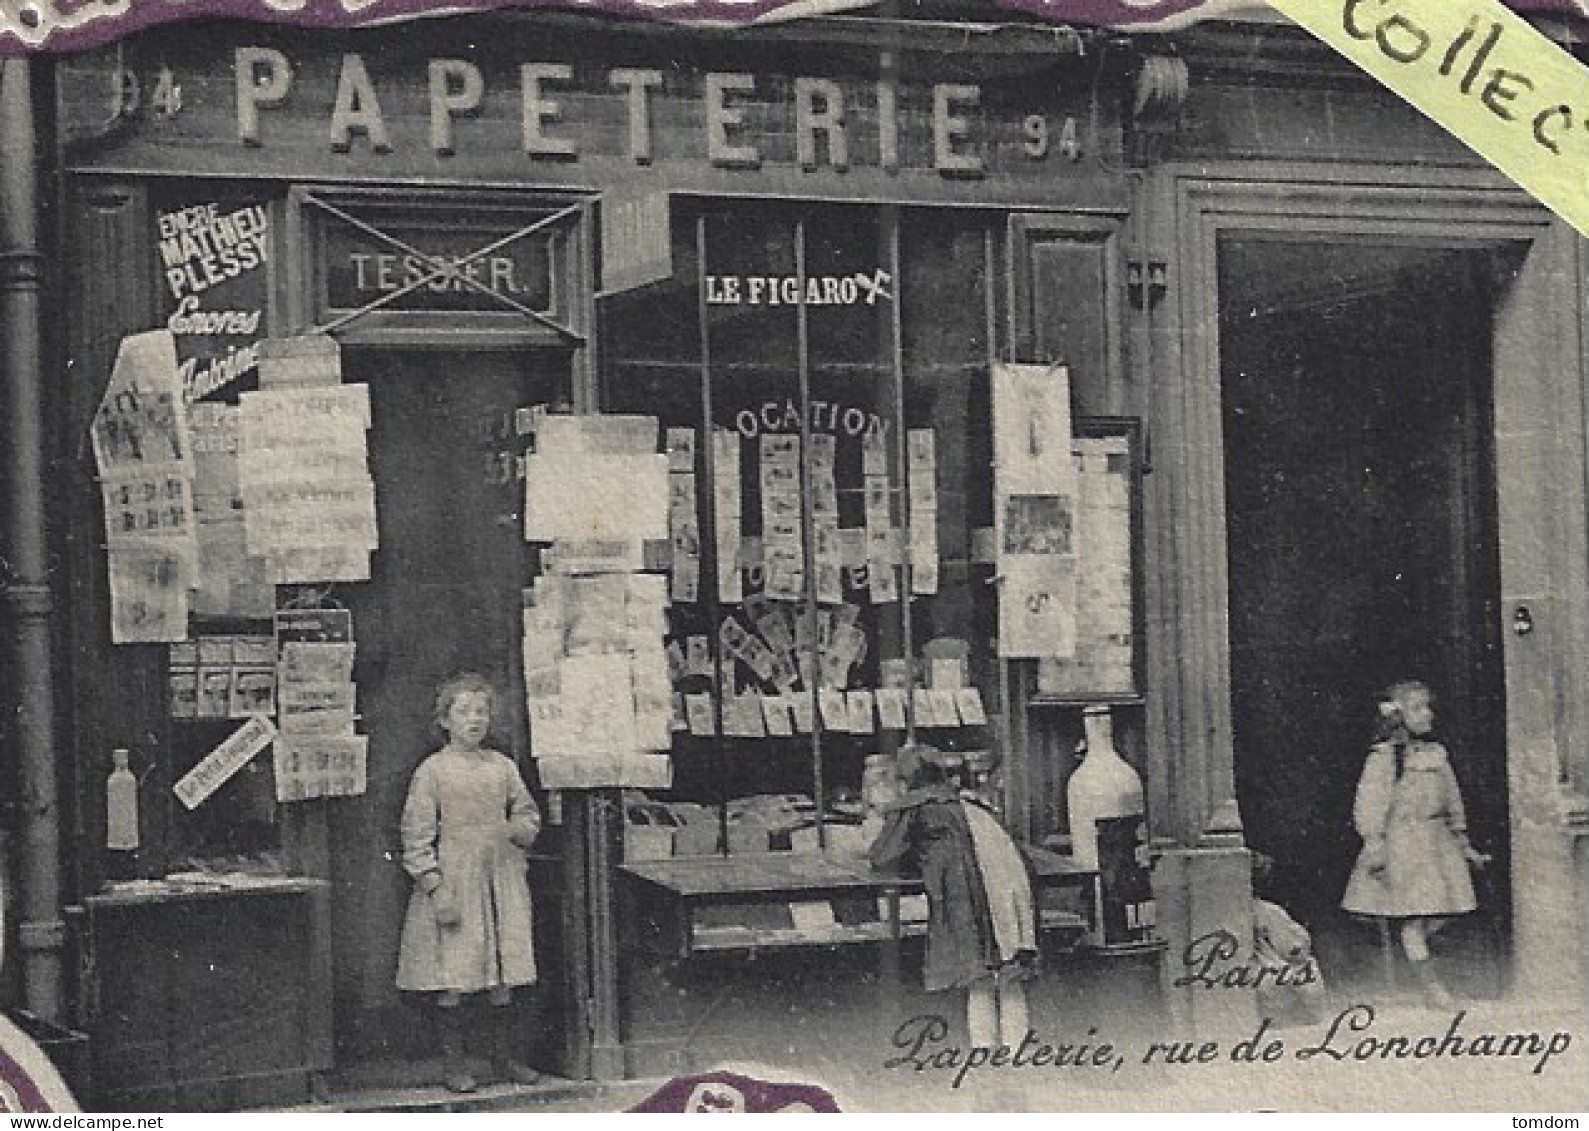 Paris***(75016)**Thème:Marchand De Cartes Postales éditeur Papeterie Tessier 94 Rue De Longchamp - District 16